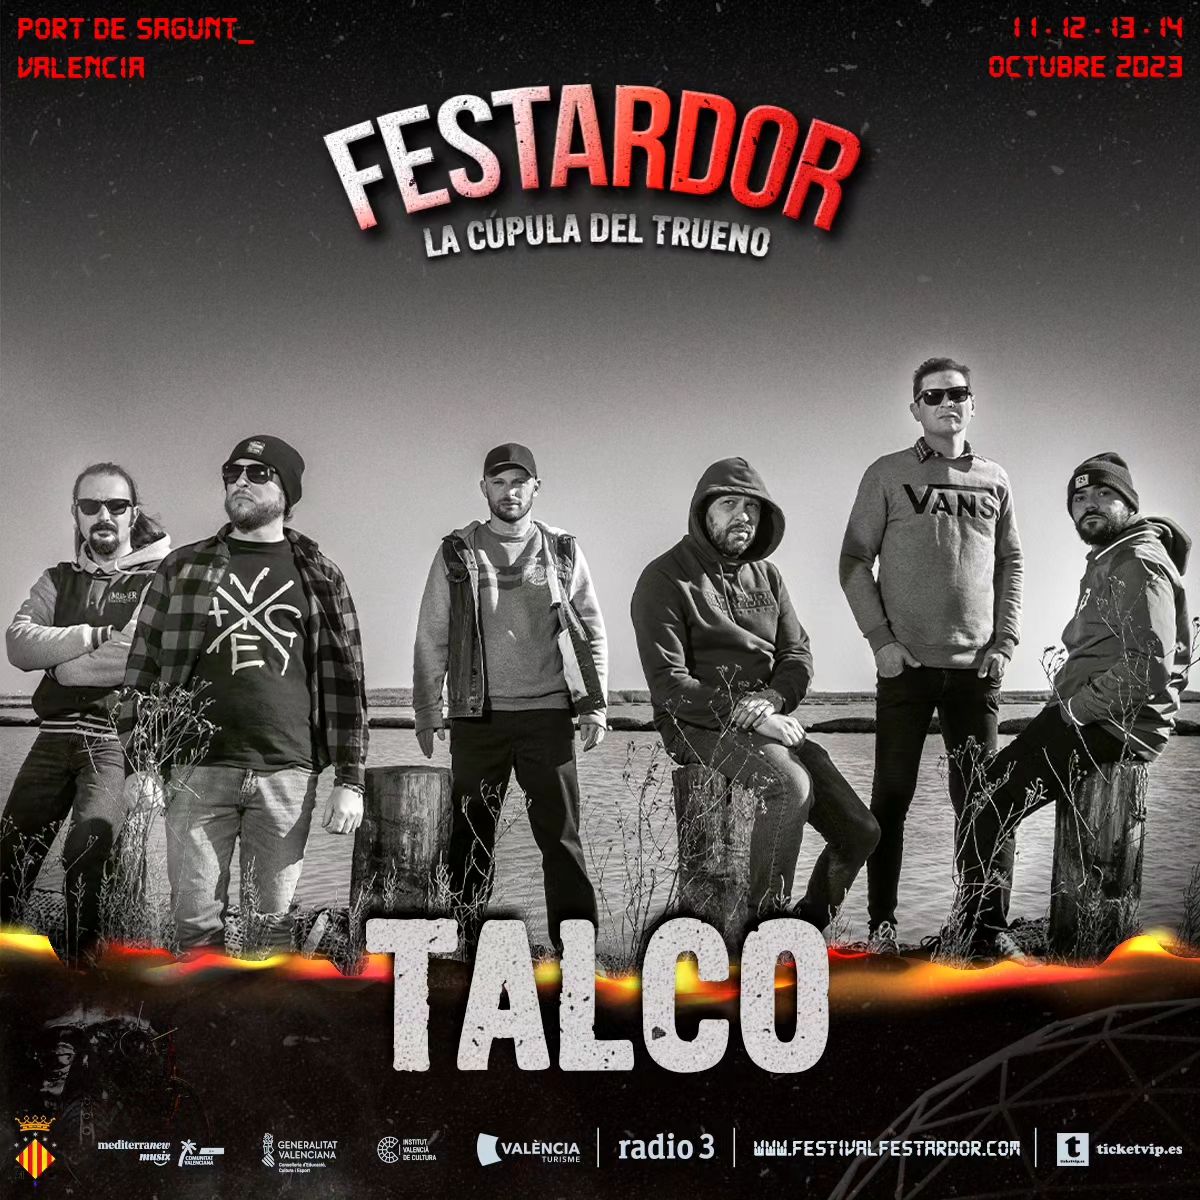 AQUESTA NIT 𝐓𝐀𝐋𝐂𝐎 estarà tocant al festival 𝐅𝐄𝐒𝐓𝐀𝐑𝐃𝐎𝐑, LA CUPULA DEL TRUENO, que té lloc al Port de Segunt (València). Tindrem el millor punk italià a l'escenari de l'ESPAI NEGRITA. TICKETS 🎫 ⇢ festivalfestardor.com ⏰ PORTES: 17.00 h. 02.00 ⇢ TALCO